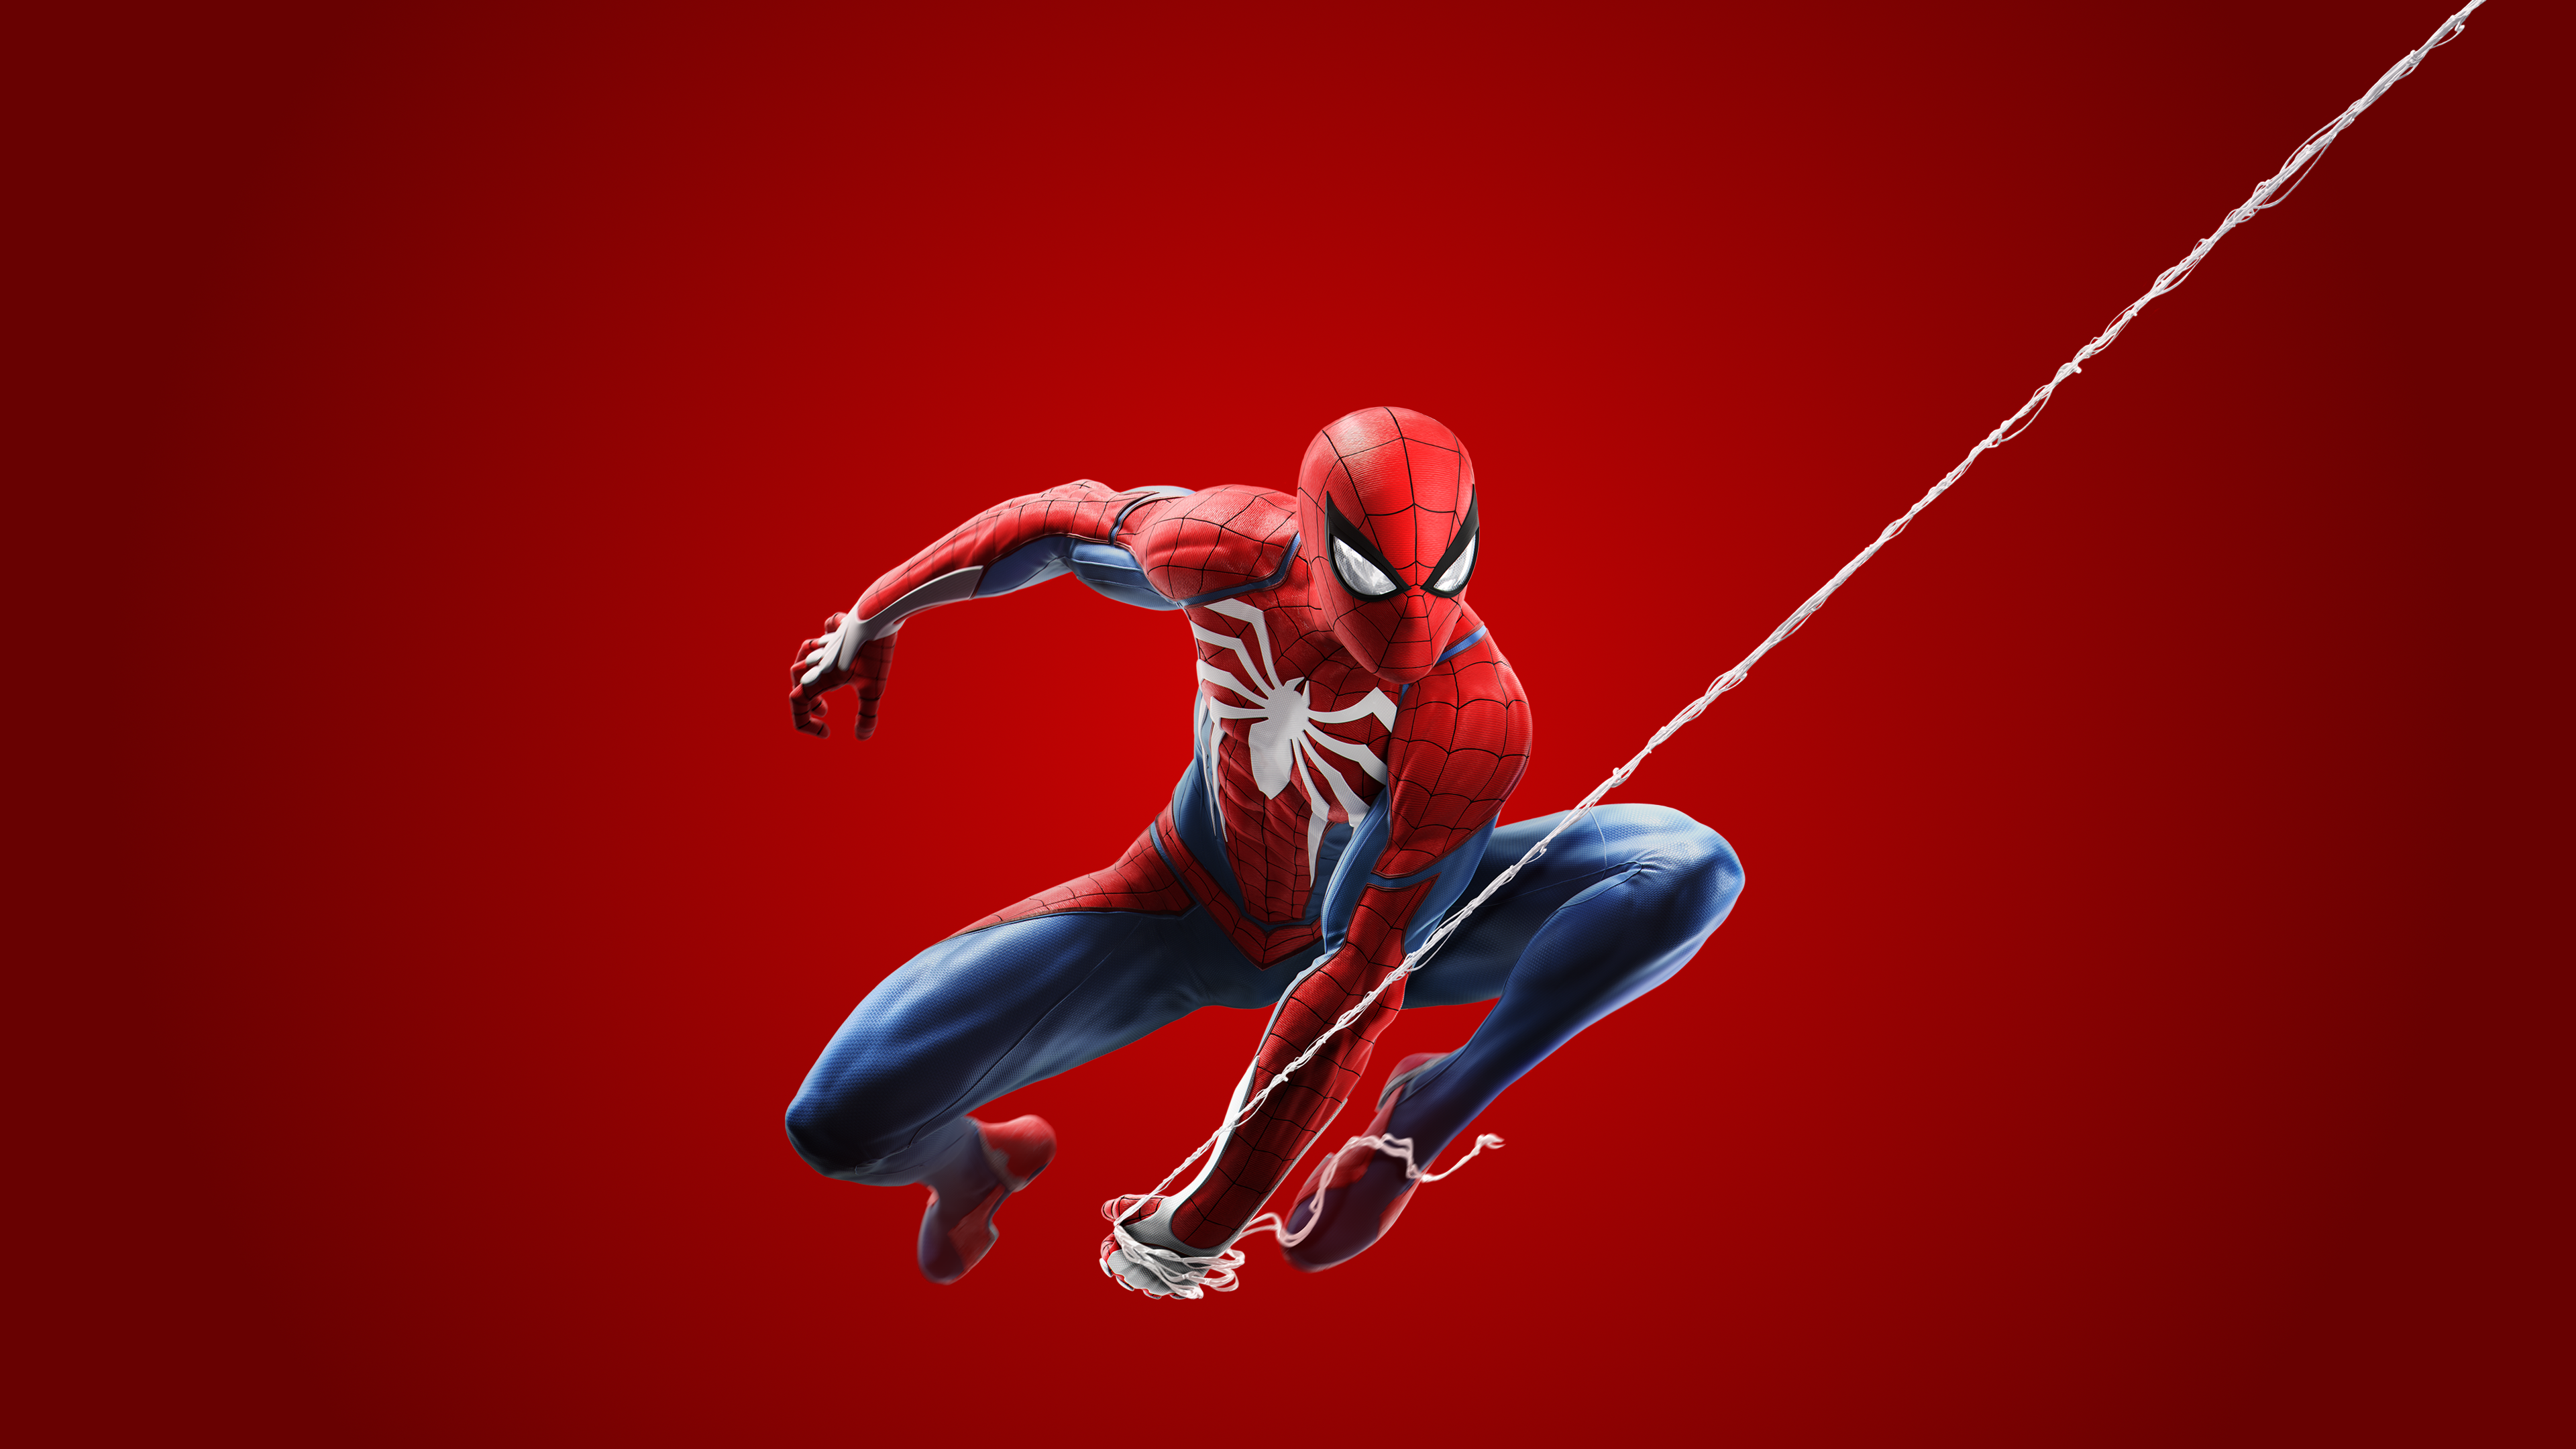 fonds d'écran de spiderman,homme araignée,super héros,personnage fictif,sport extrême